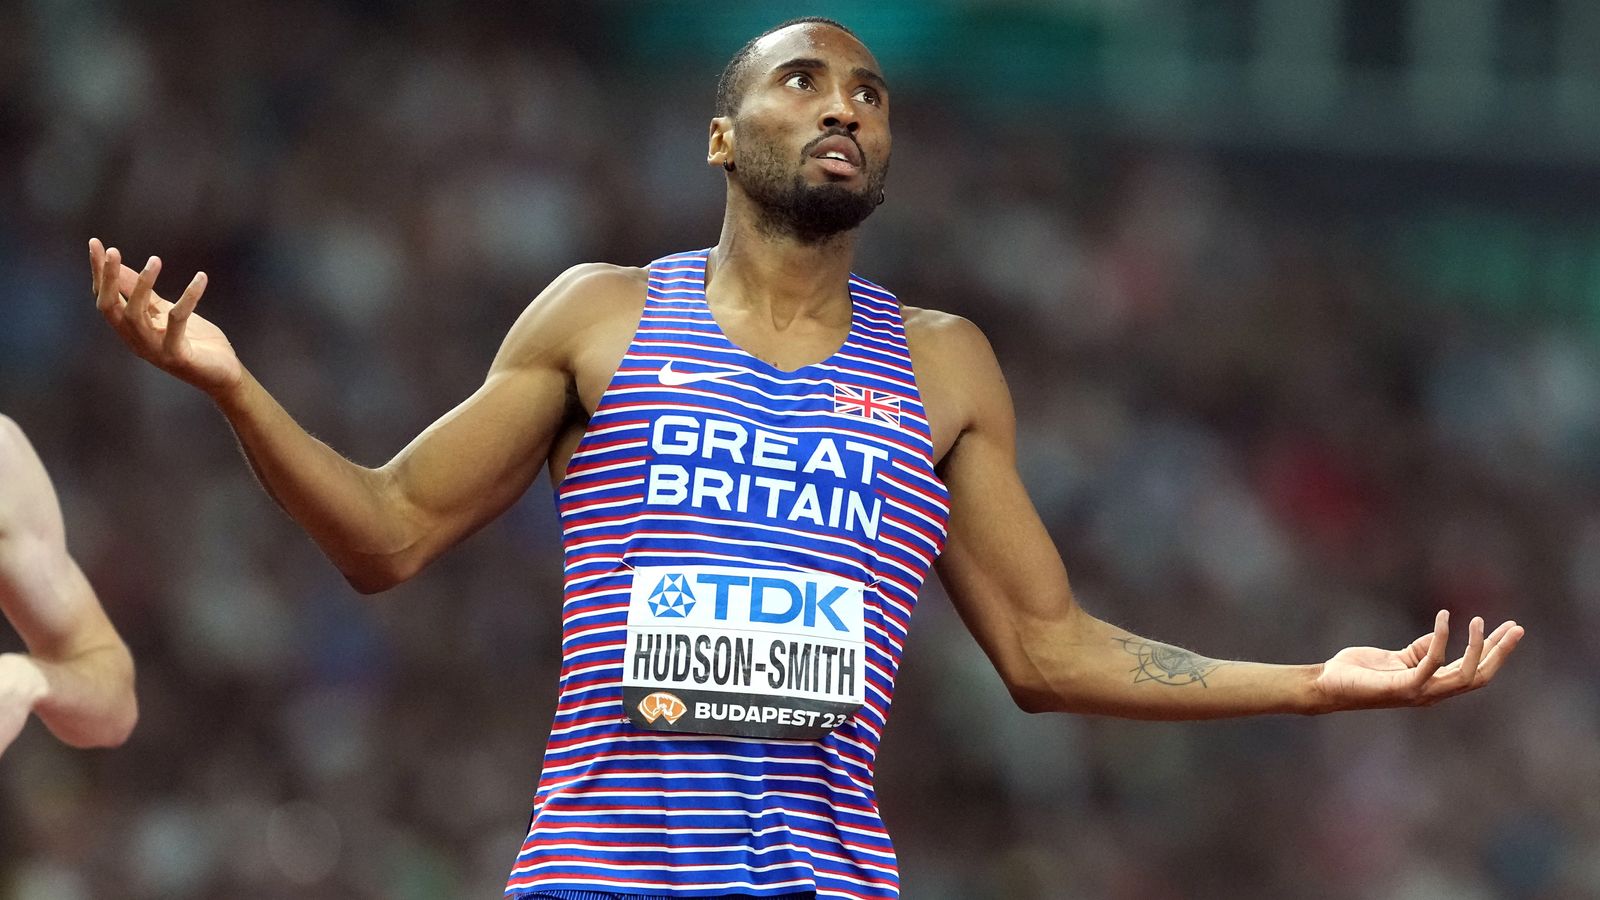 Championnats du monde d’athlétisme : Matt Hudson-Smith bat le record d’Europe du 400 m |  Actualités d’athlétisme